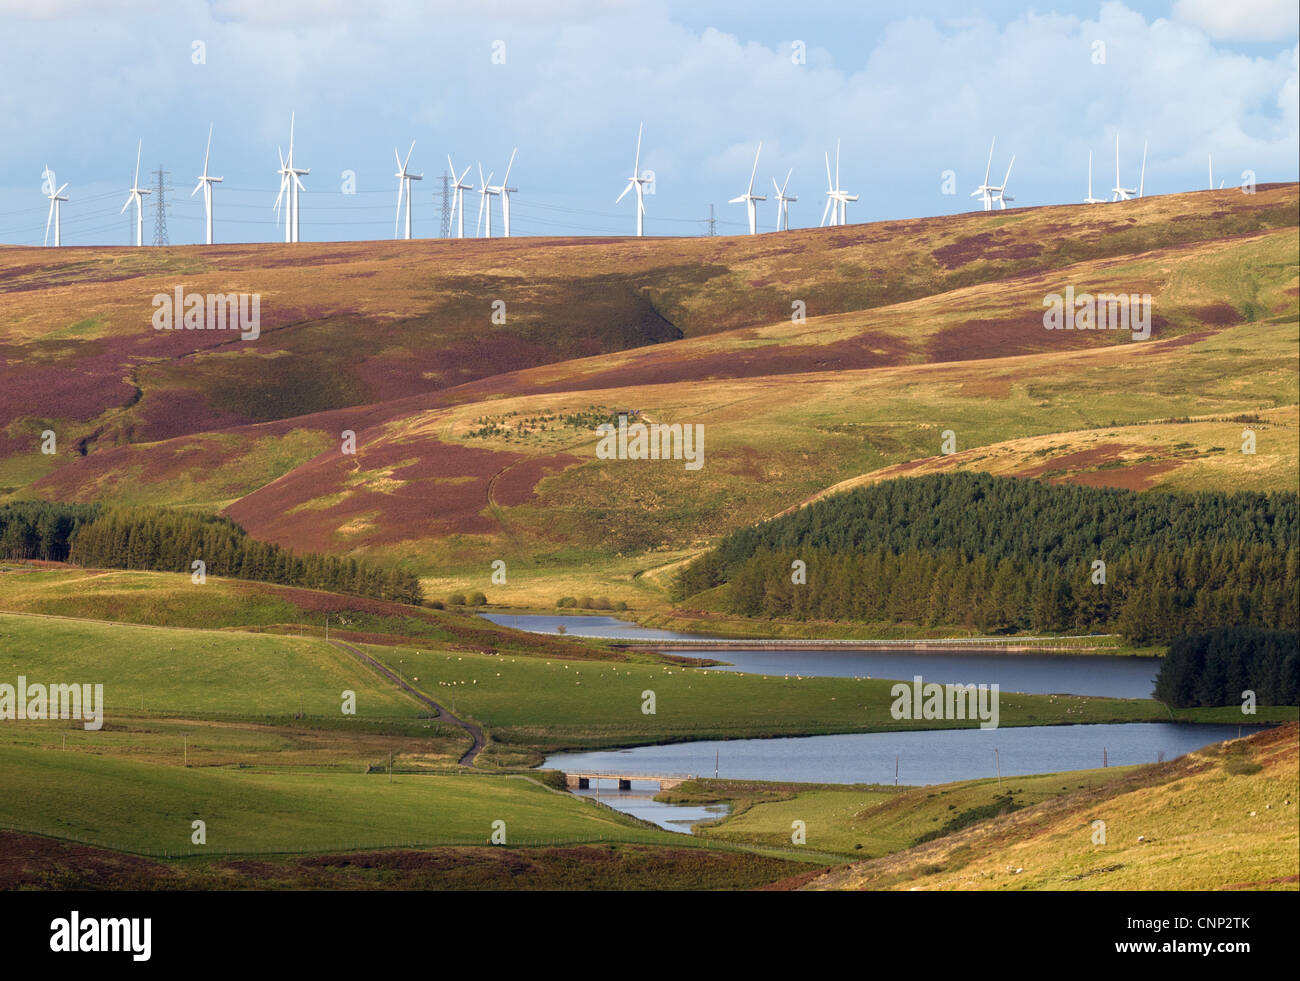 Le turbine eoliche sulla collina sopra il serbatoio, serbatoio Whiteadder, Lammermuir Hills, Scottish Borders, Scozia, settembre Foto Stock